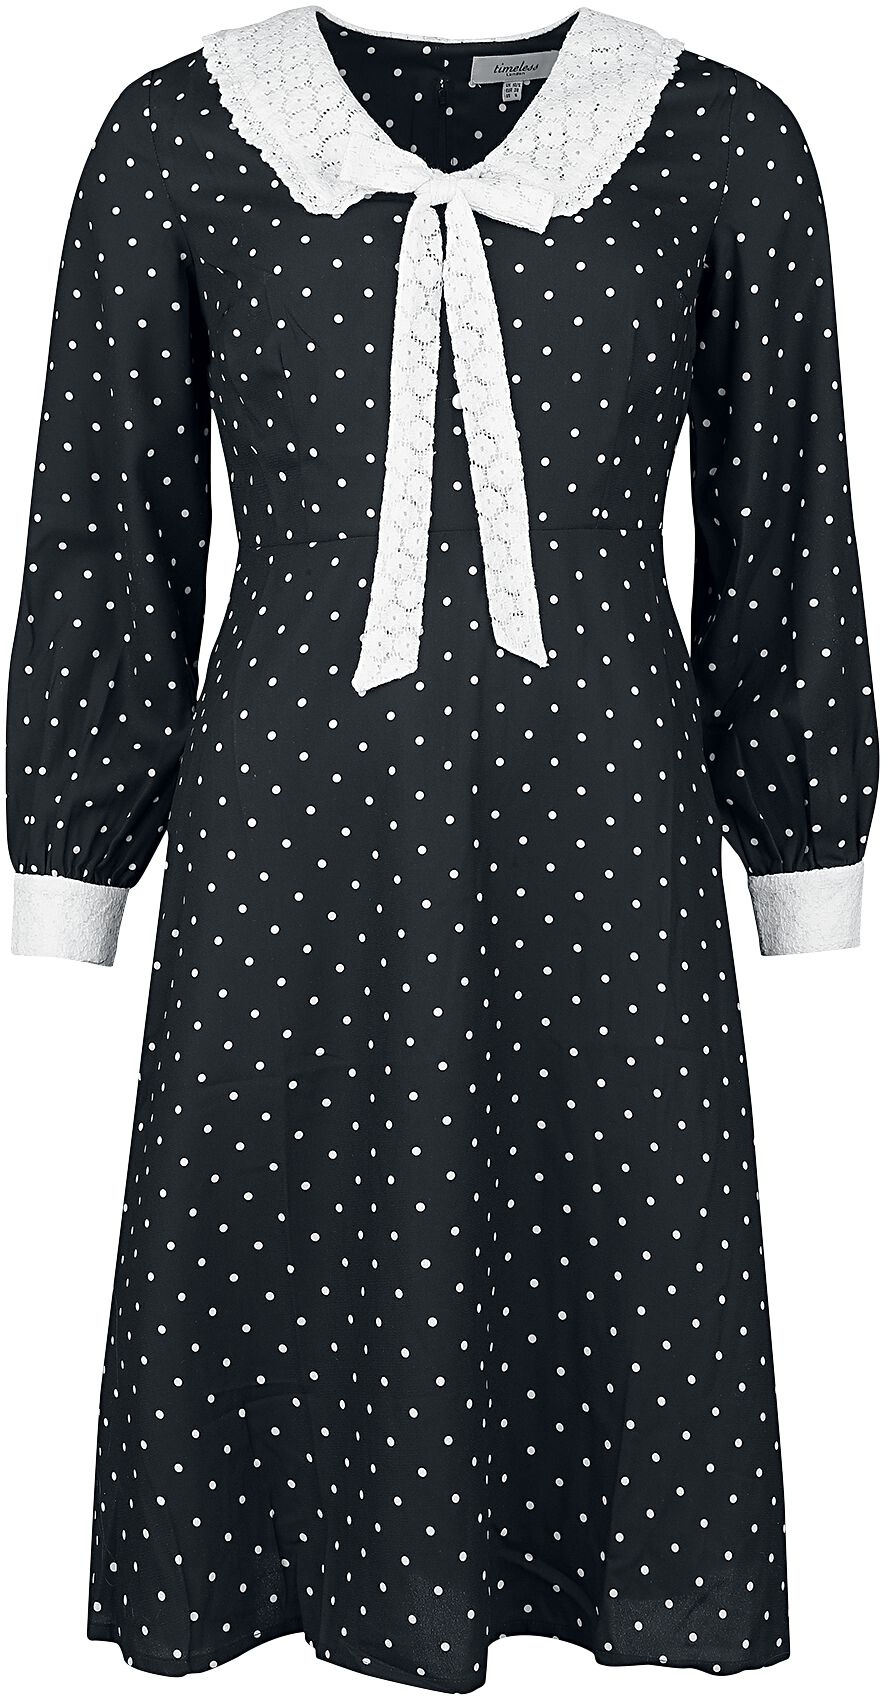 Timeless London - Rockabilly Kleid knielang - Bow Front Dress - XS bis L - für Damen - Größe S - schwarz/weiß - S